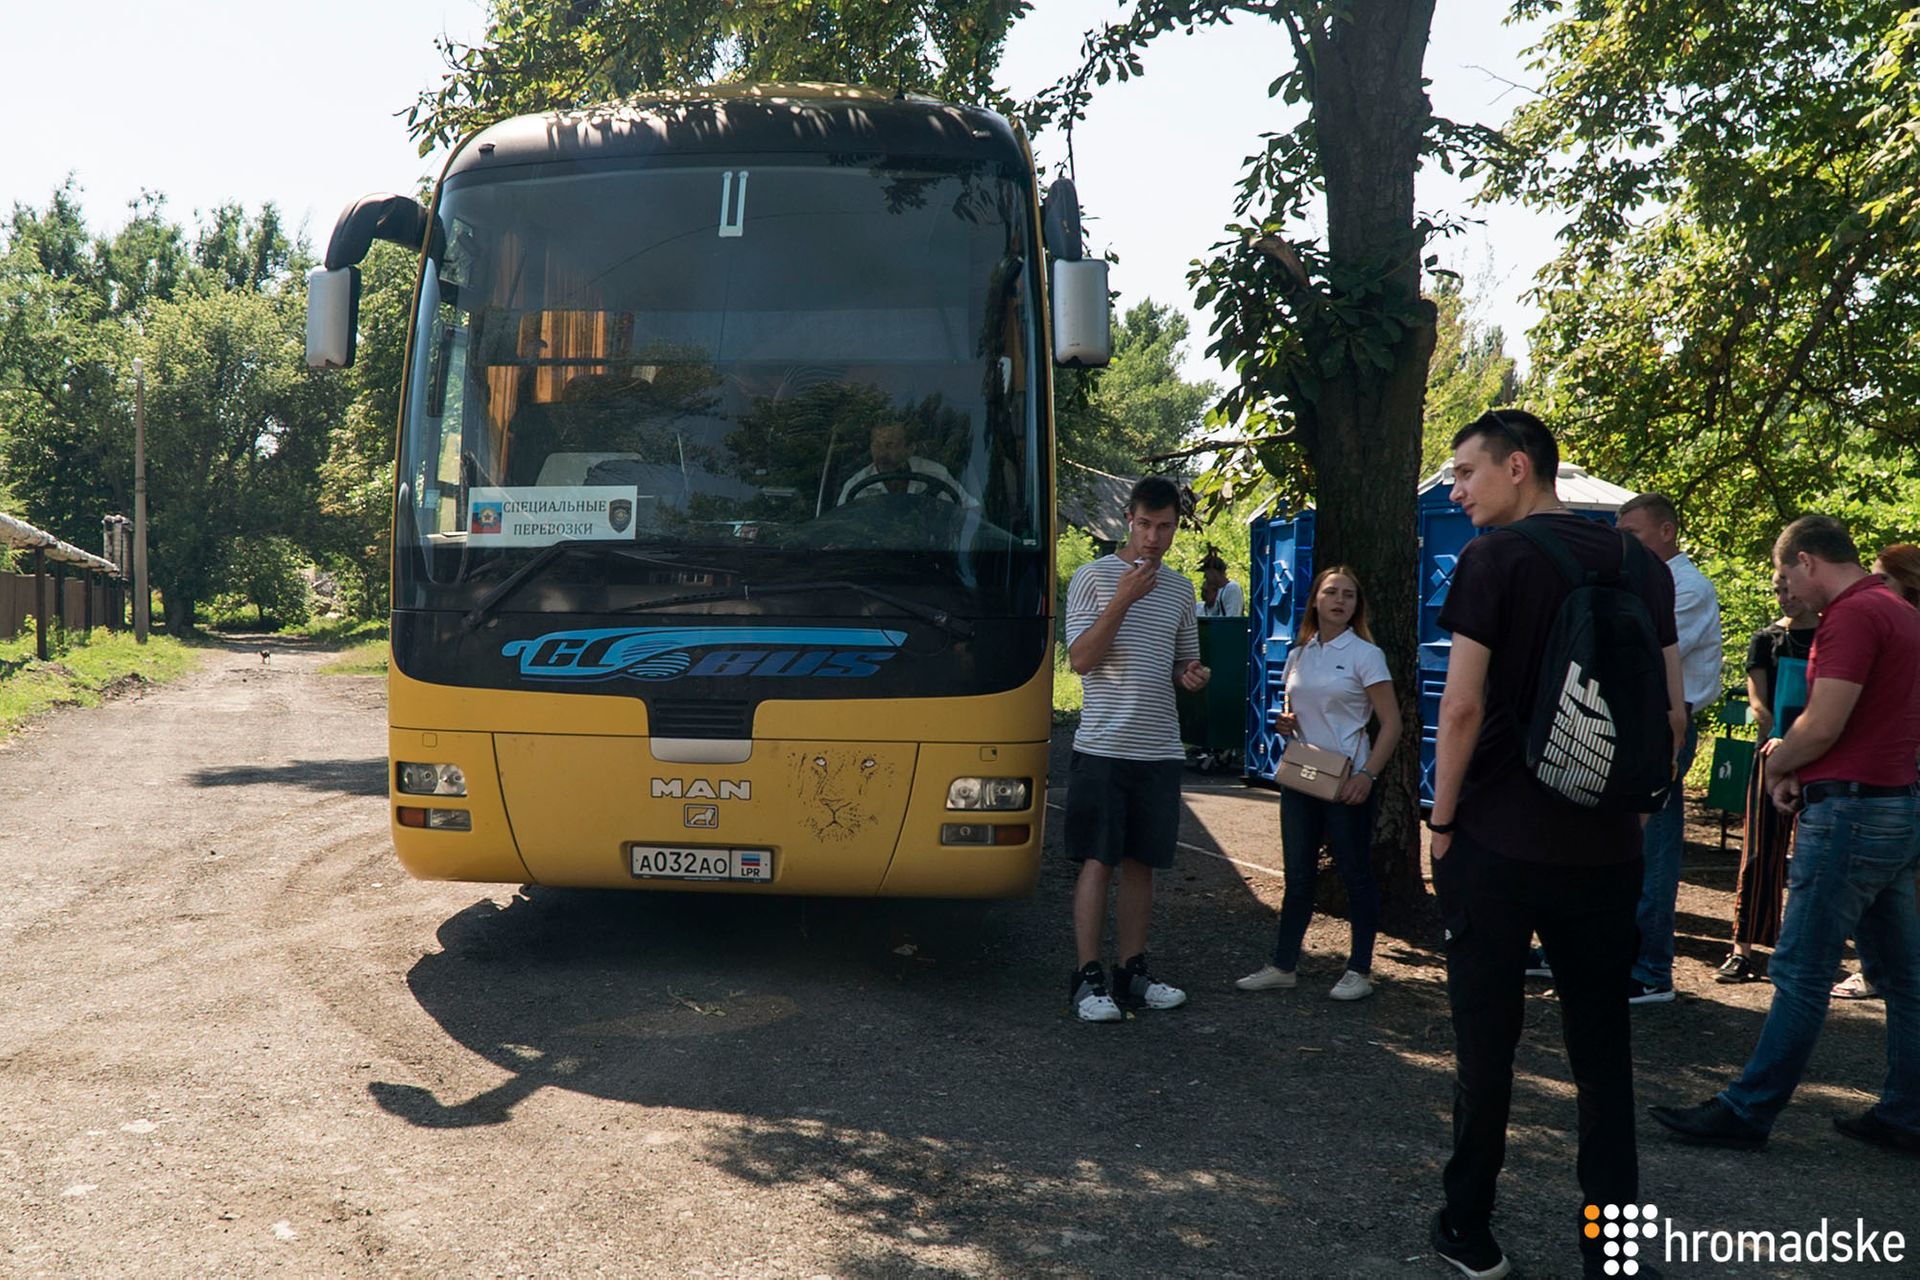 Автобус с номерами так называемых «ДНР» и «ЛНР» привозит украинцев, которые хотят получить паспорт гражданина РФ, Новошахтинск, 18 июня 2019 года. Фото: Александр Кохан/Громадское